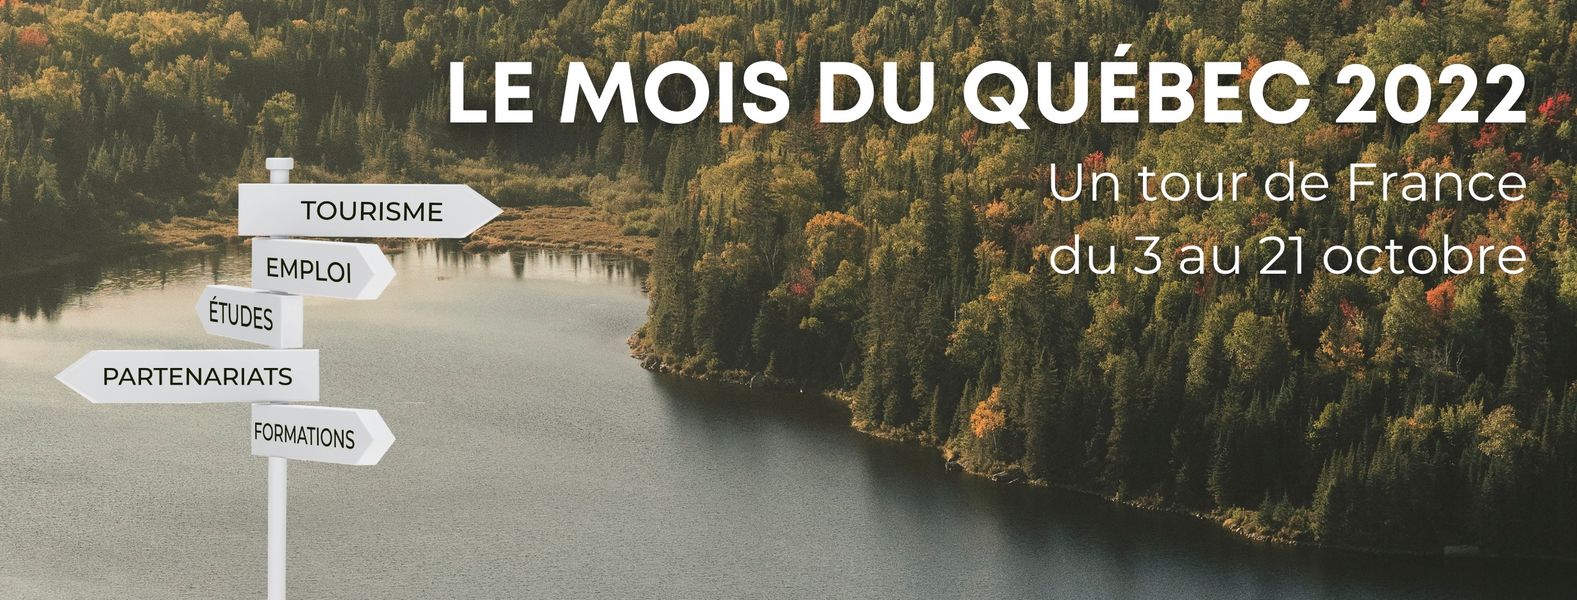 Amoureux du Québec ? Rendez-vous à Nancy le 10 octobre prochain !